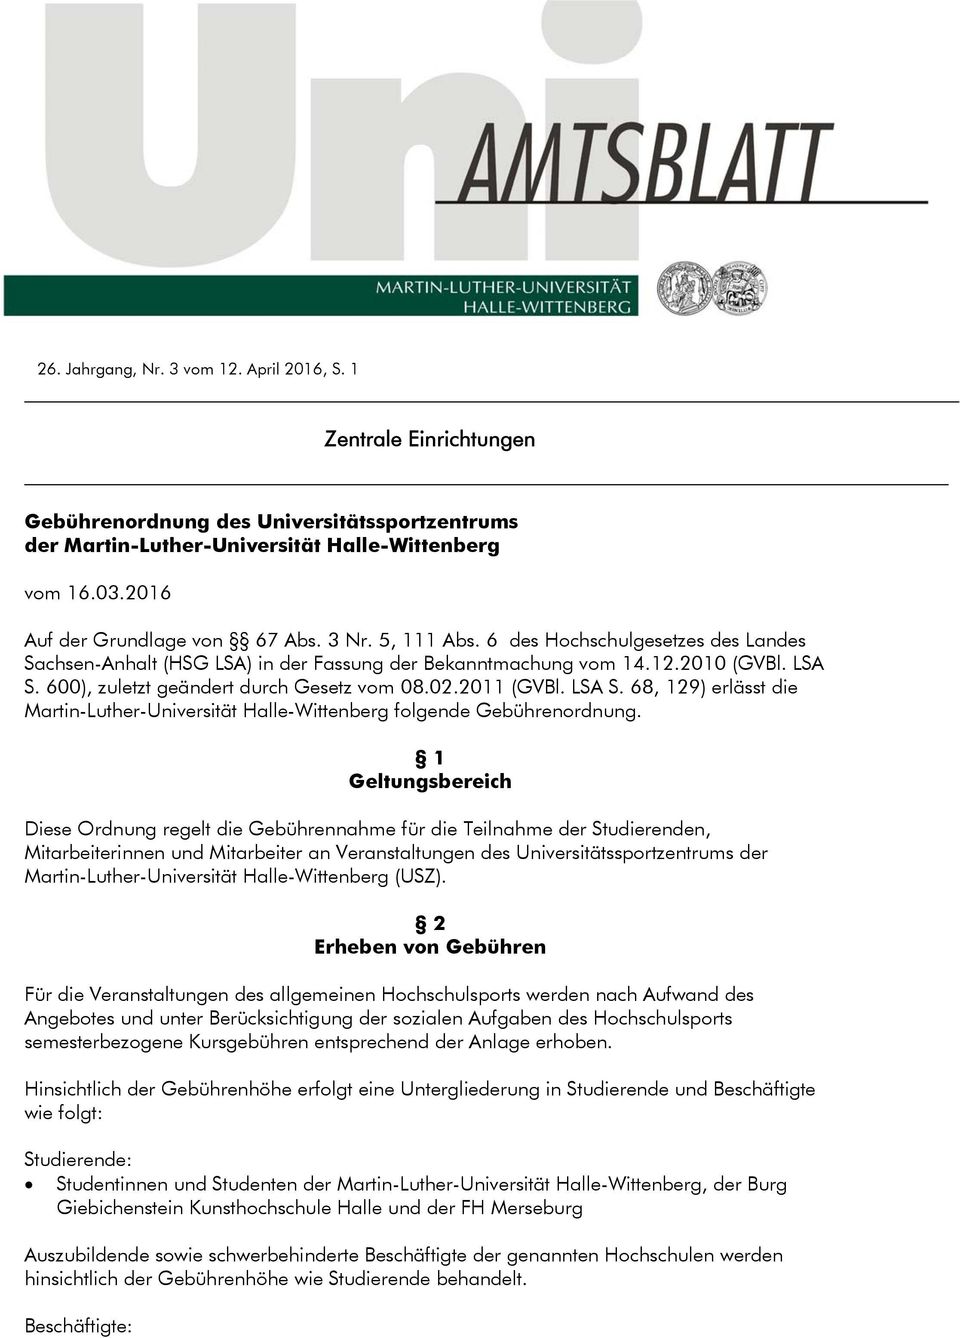 600), zuletzt geändert durch Gesetz vom 08.02.2011 (GVBl. LSA S. 68, 129) erlässt die Martin-Luther-Universität Halle-Wittenberg folgende Gebührenordnung.